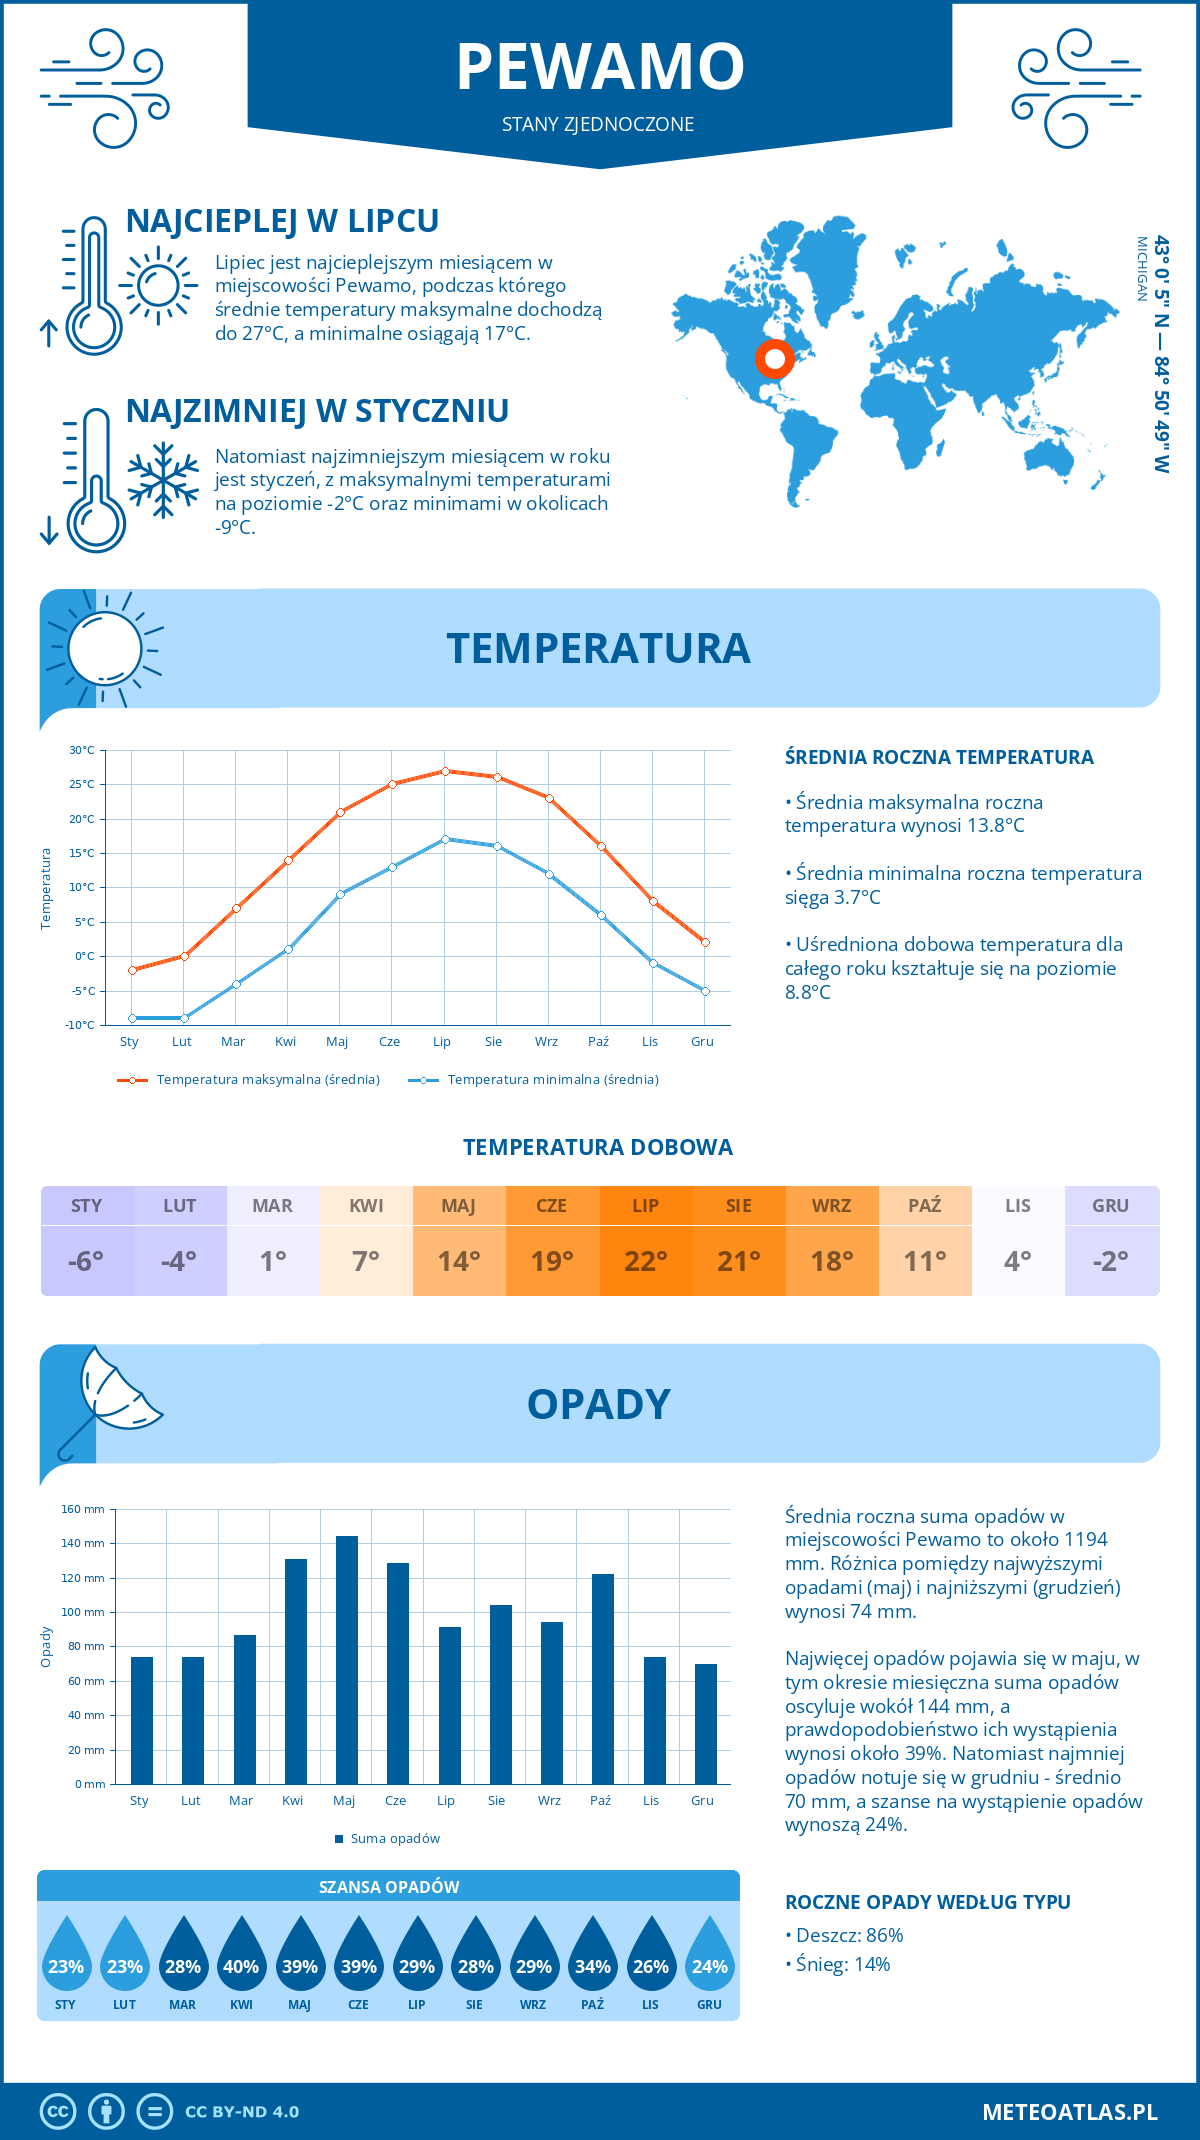 Pogoda Pewamo (Stany Zjednoczone). Temperatura oraz opady.